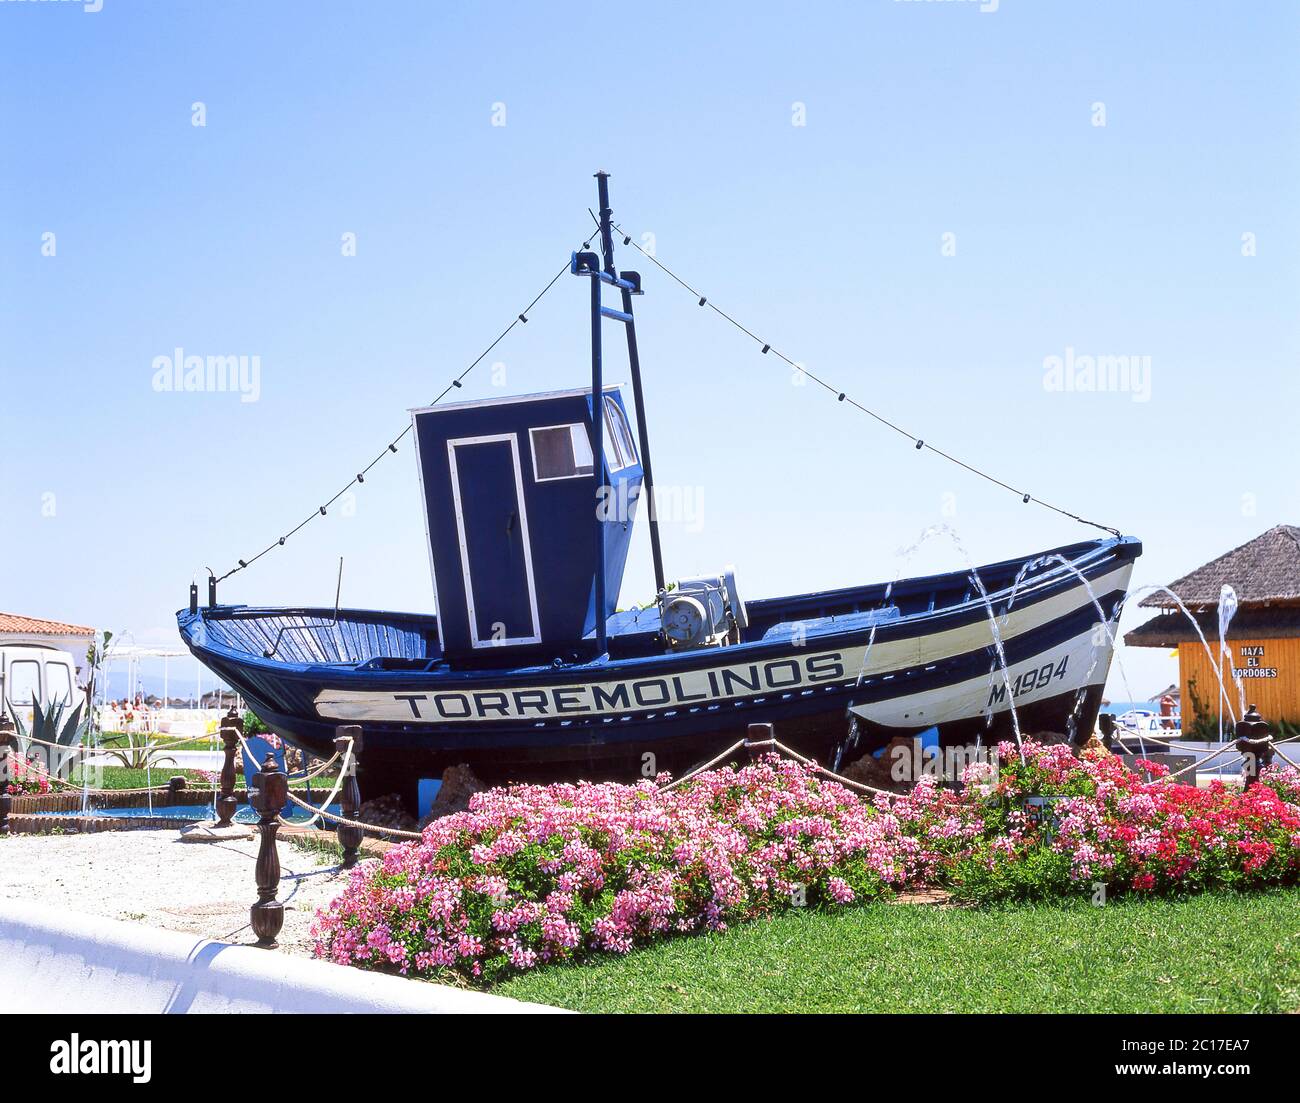 Panneau de station de bateau de pêche , Torremolinos, Costa del sol, Malaga province, Andalousie (Andalousie), Royaume d'Espagne Banque D'Images